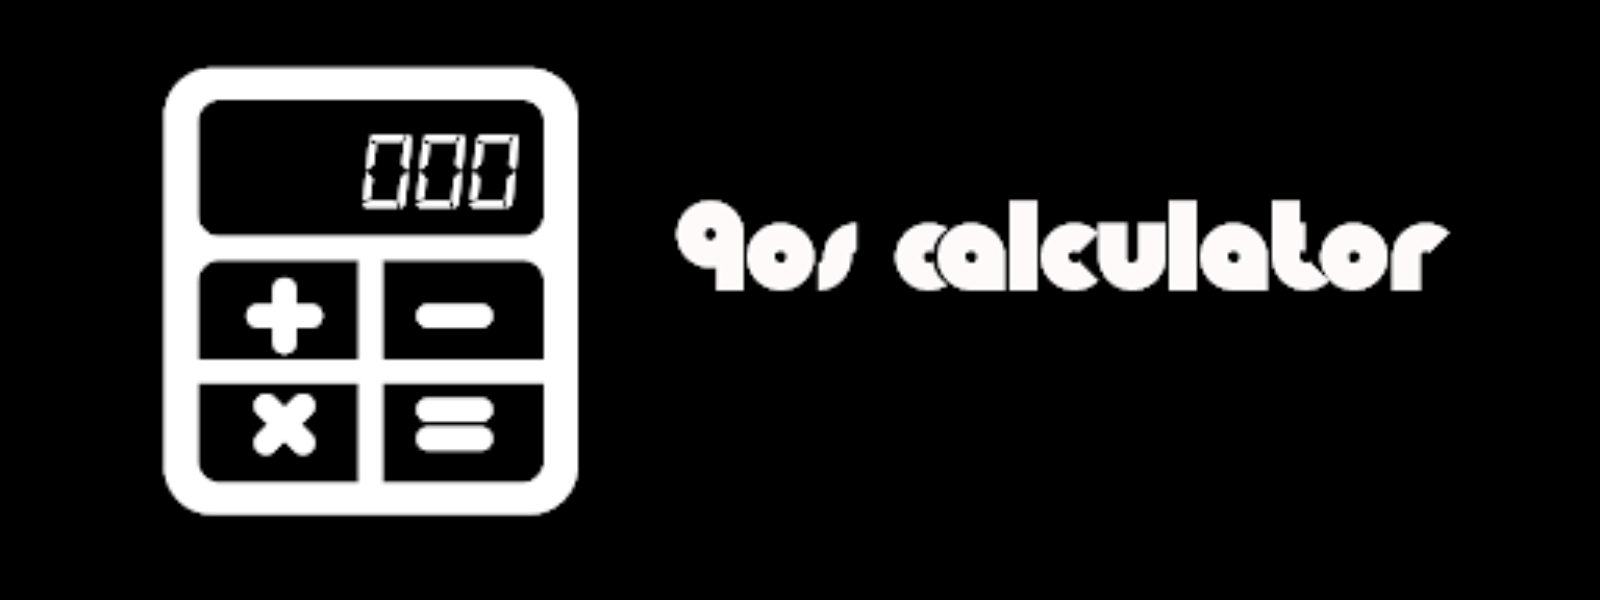 90s Calculator pentru Android | iOS